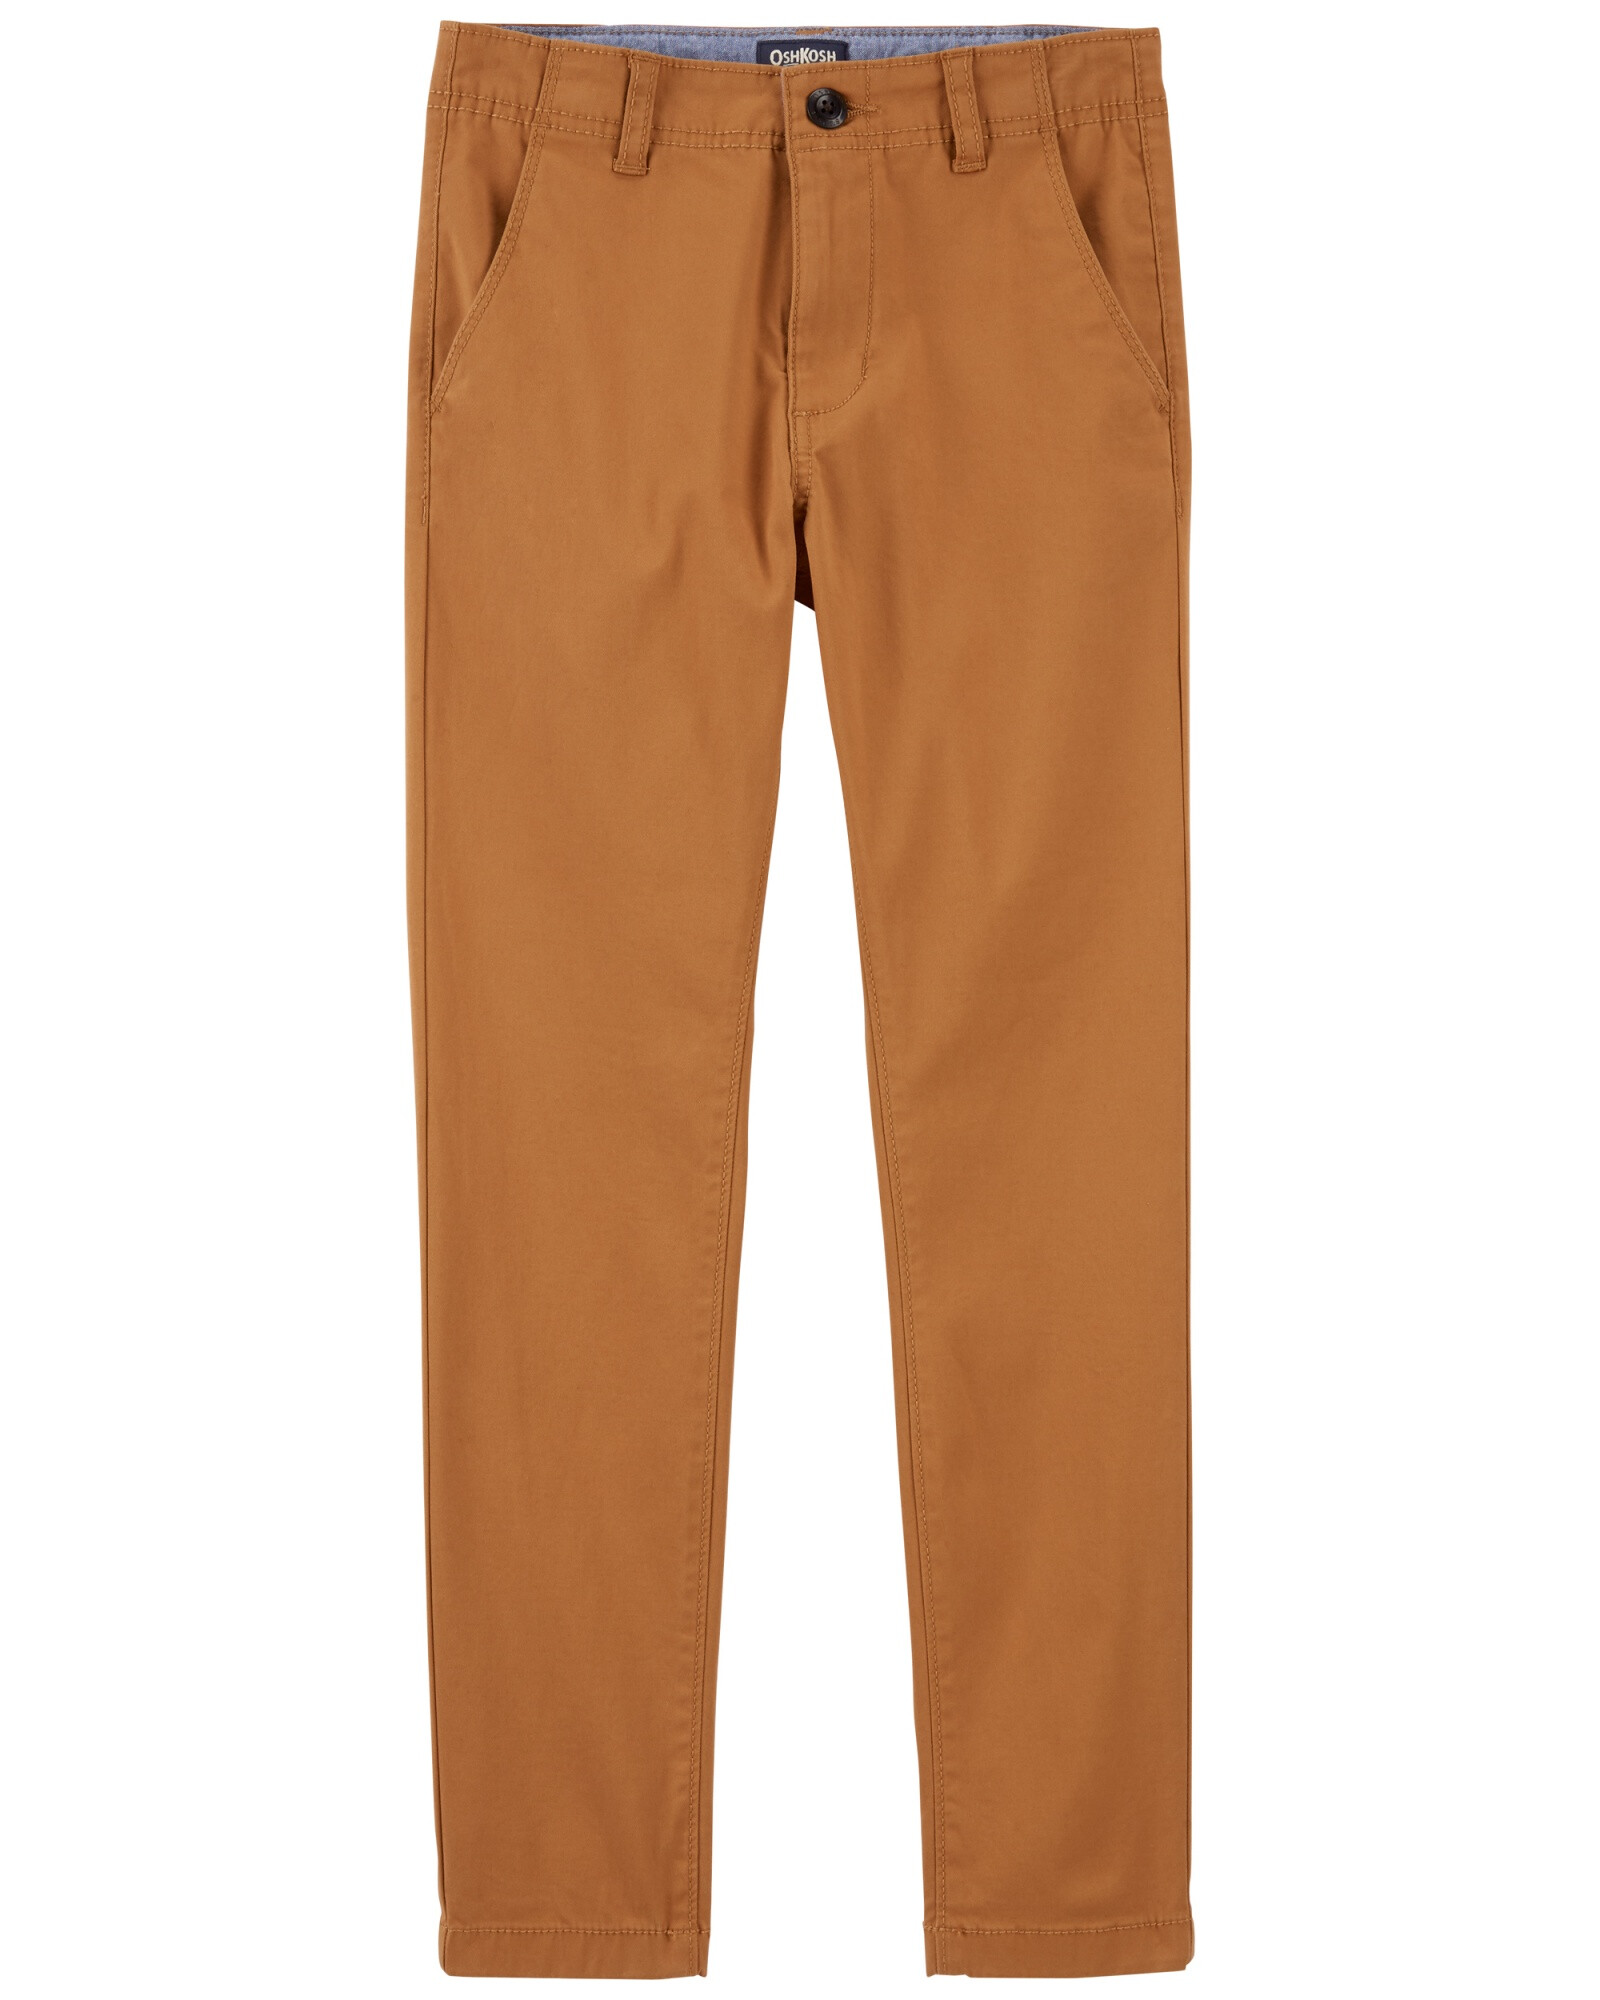 Pantalón de algodón clásico elastizado. Talles 6-14 Sin color